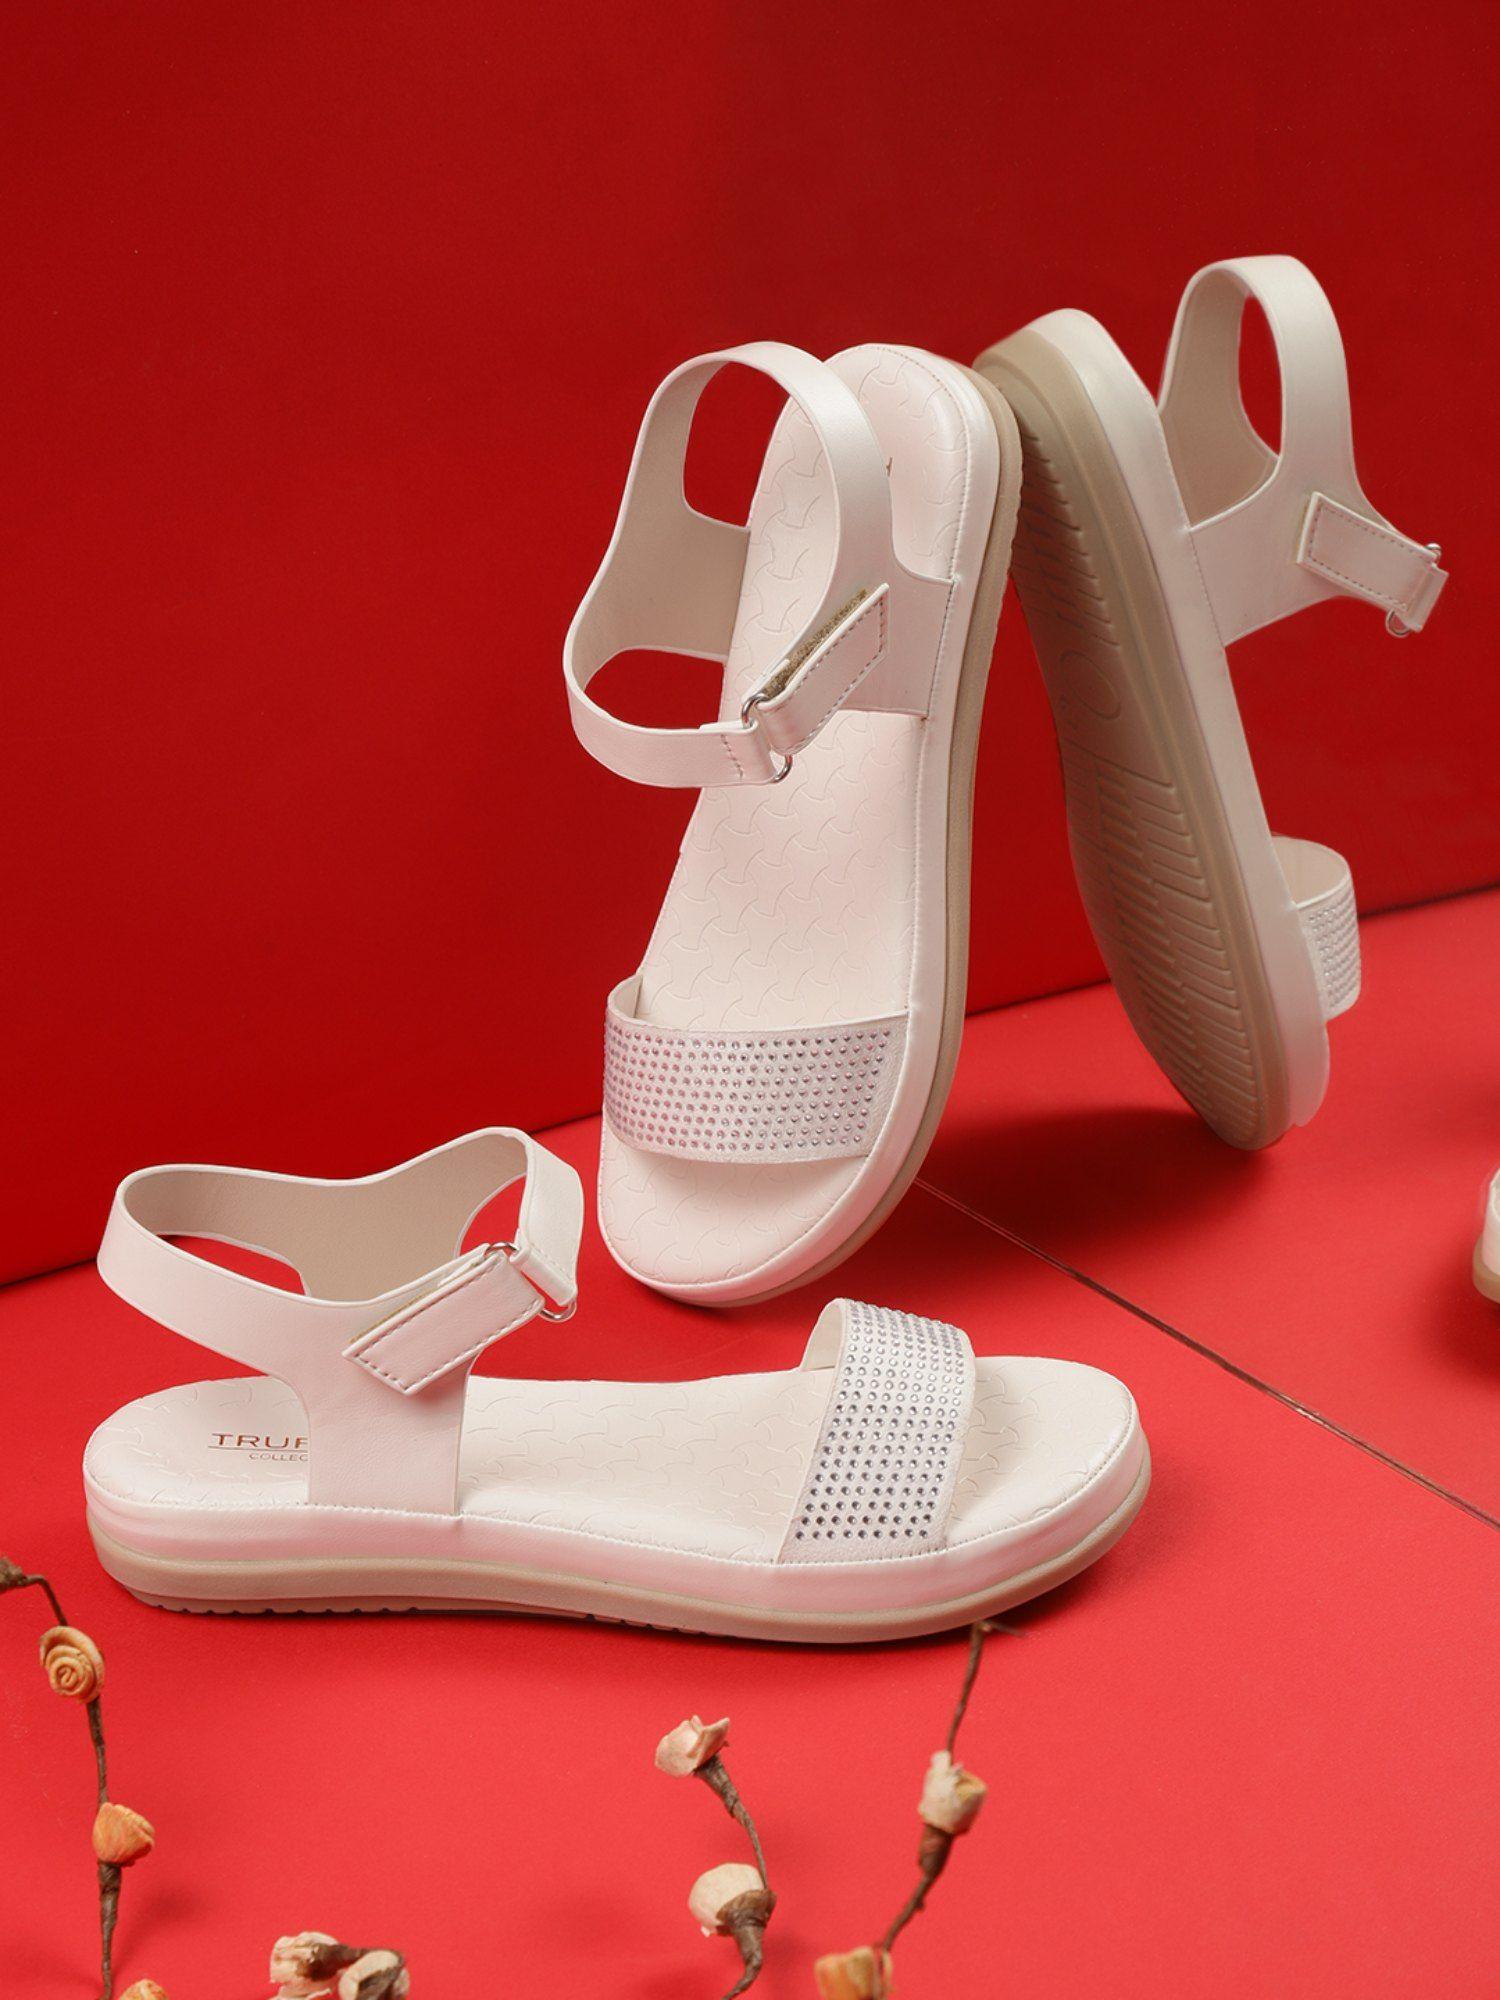 white embellished sandals